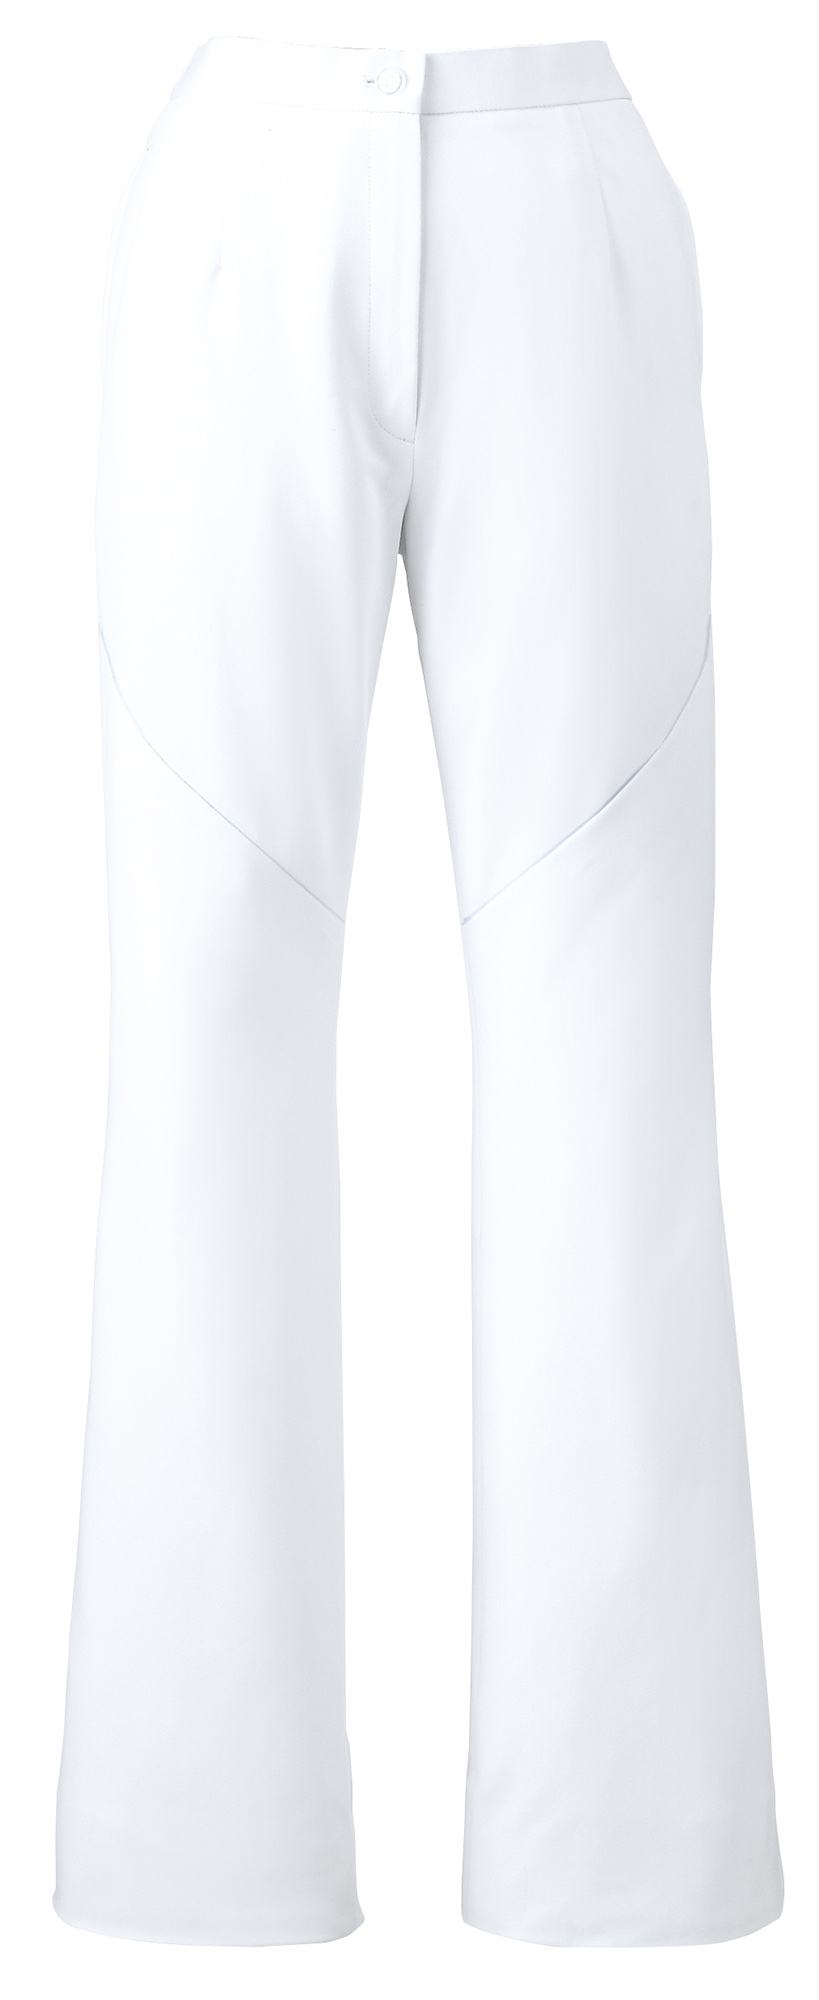 無料 白衣 ワコールとＦＯＬＫのコラボレーション 女性用 ブーツカットパンツ白衣HI300